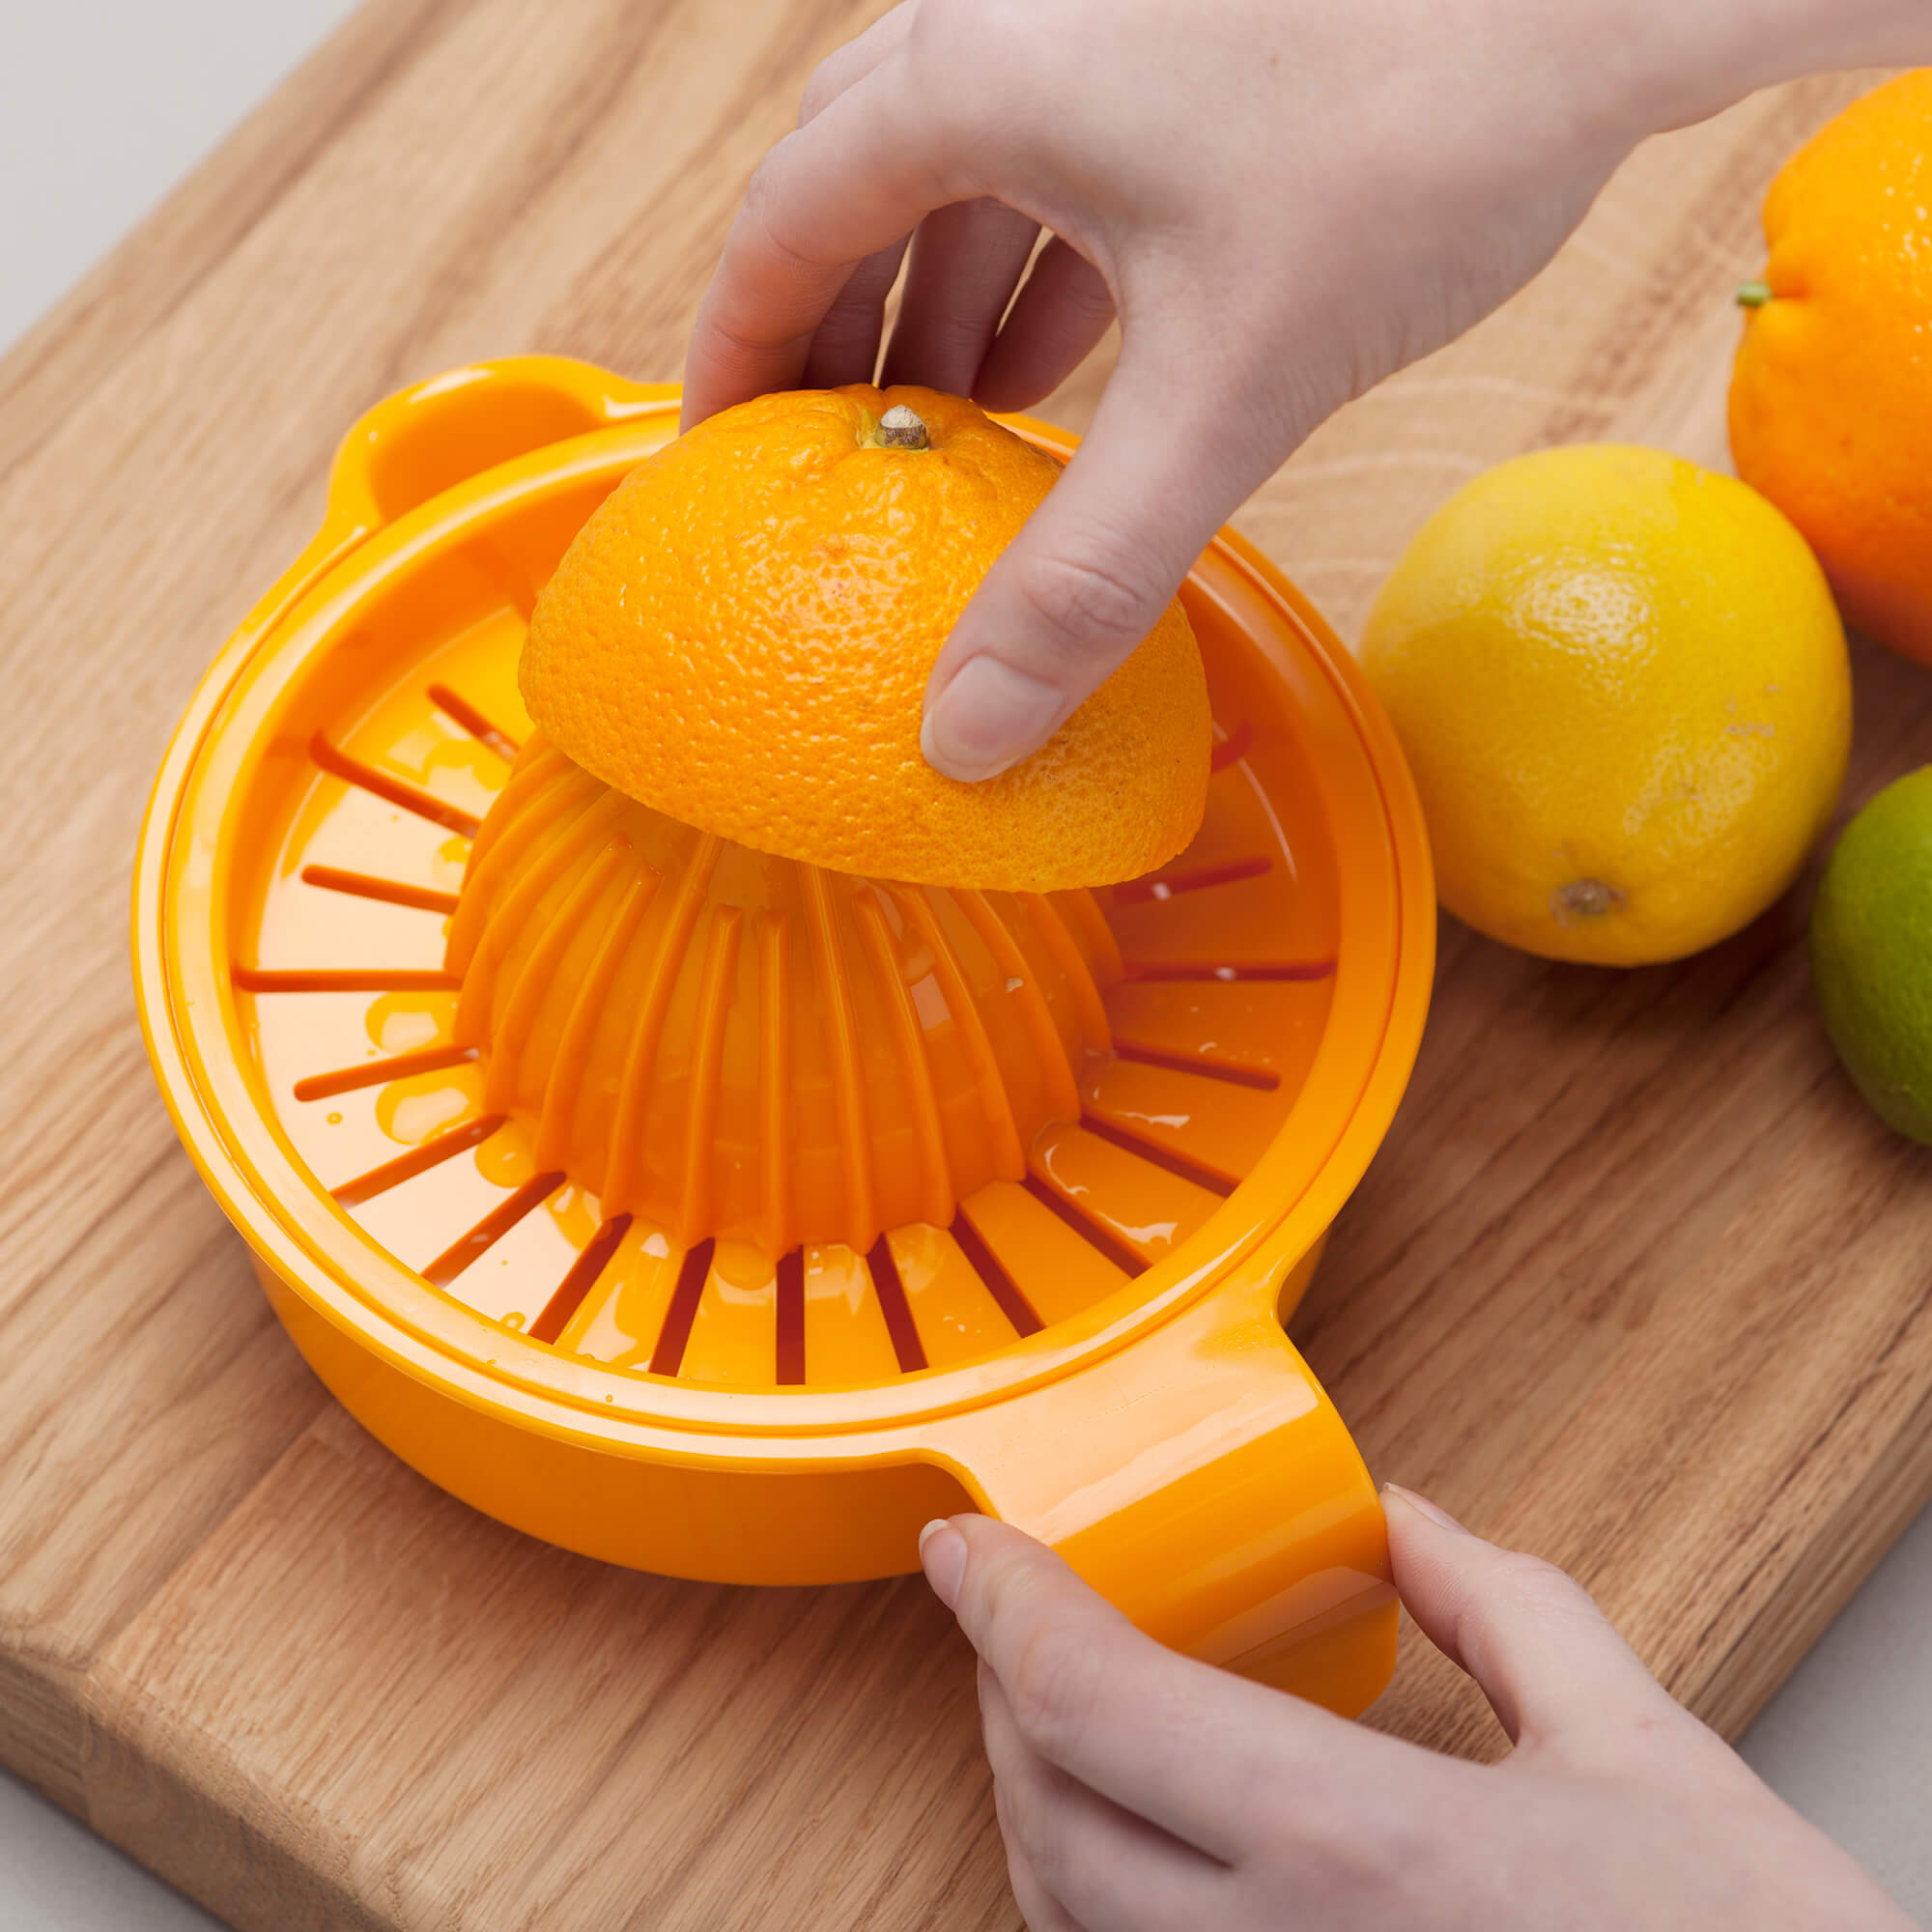 Zeal Easy Squeeze Juice Extractor squeezing oranges